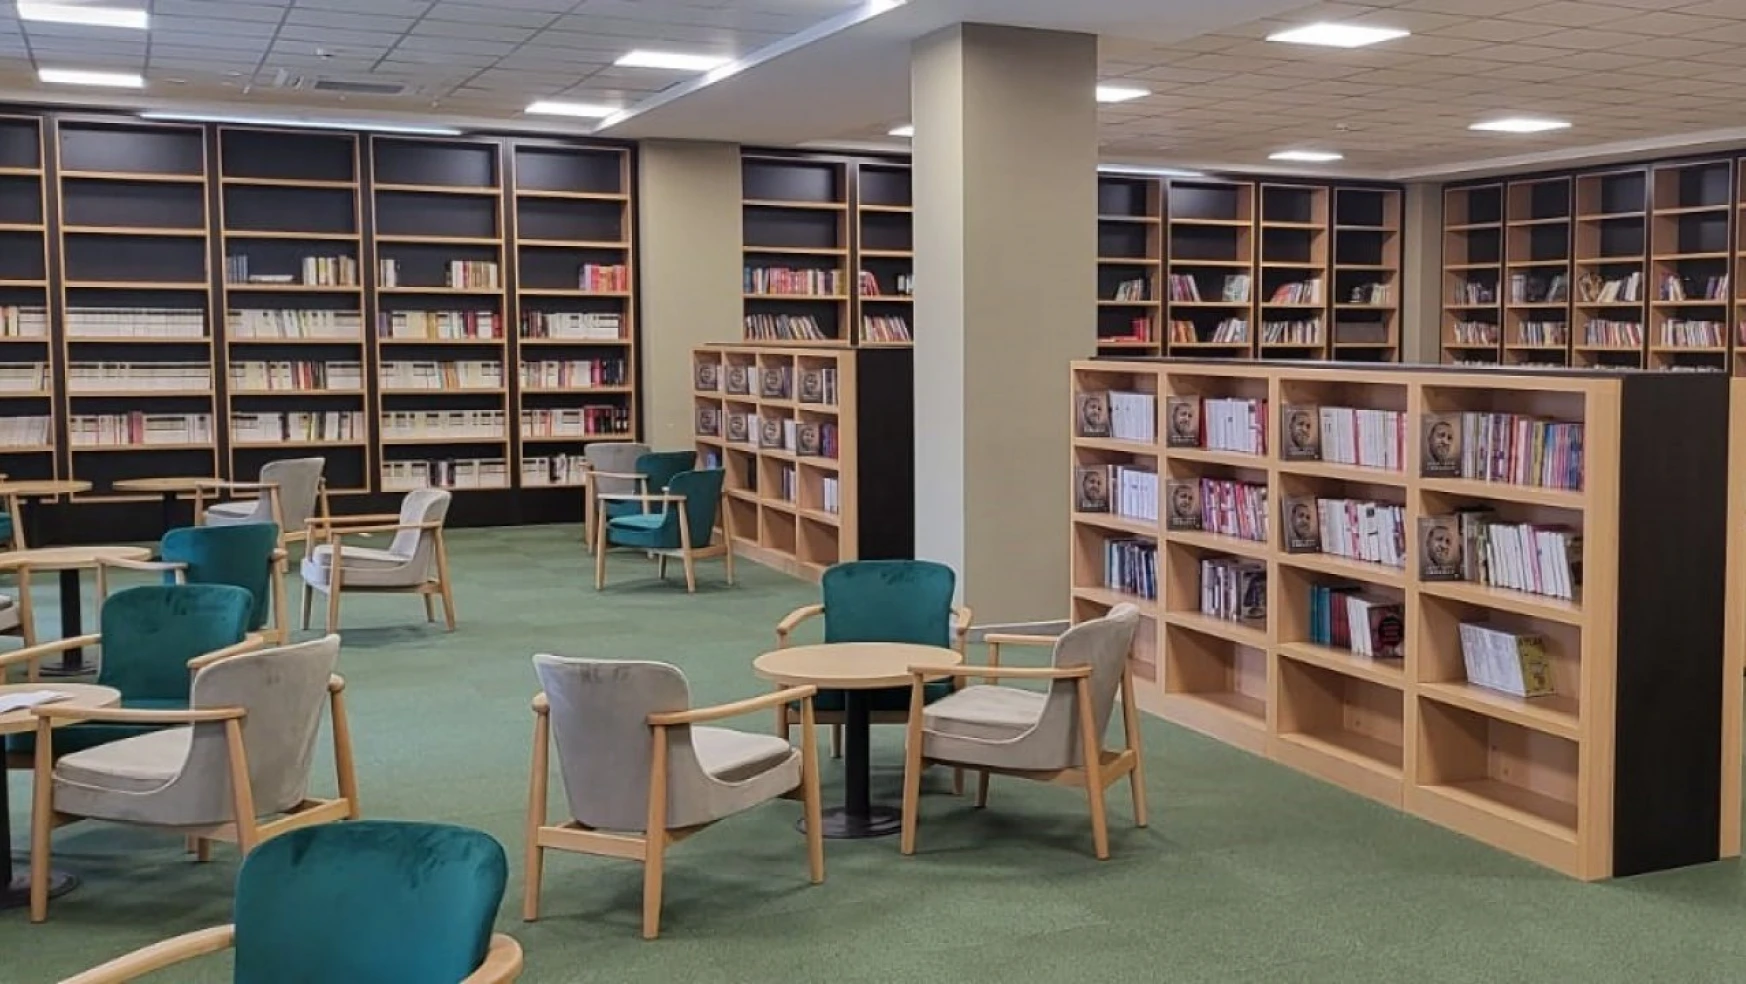 Darıca'ya yeni kütüphaneler kazandırılıyor